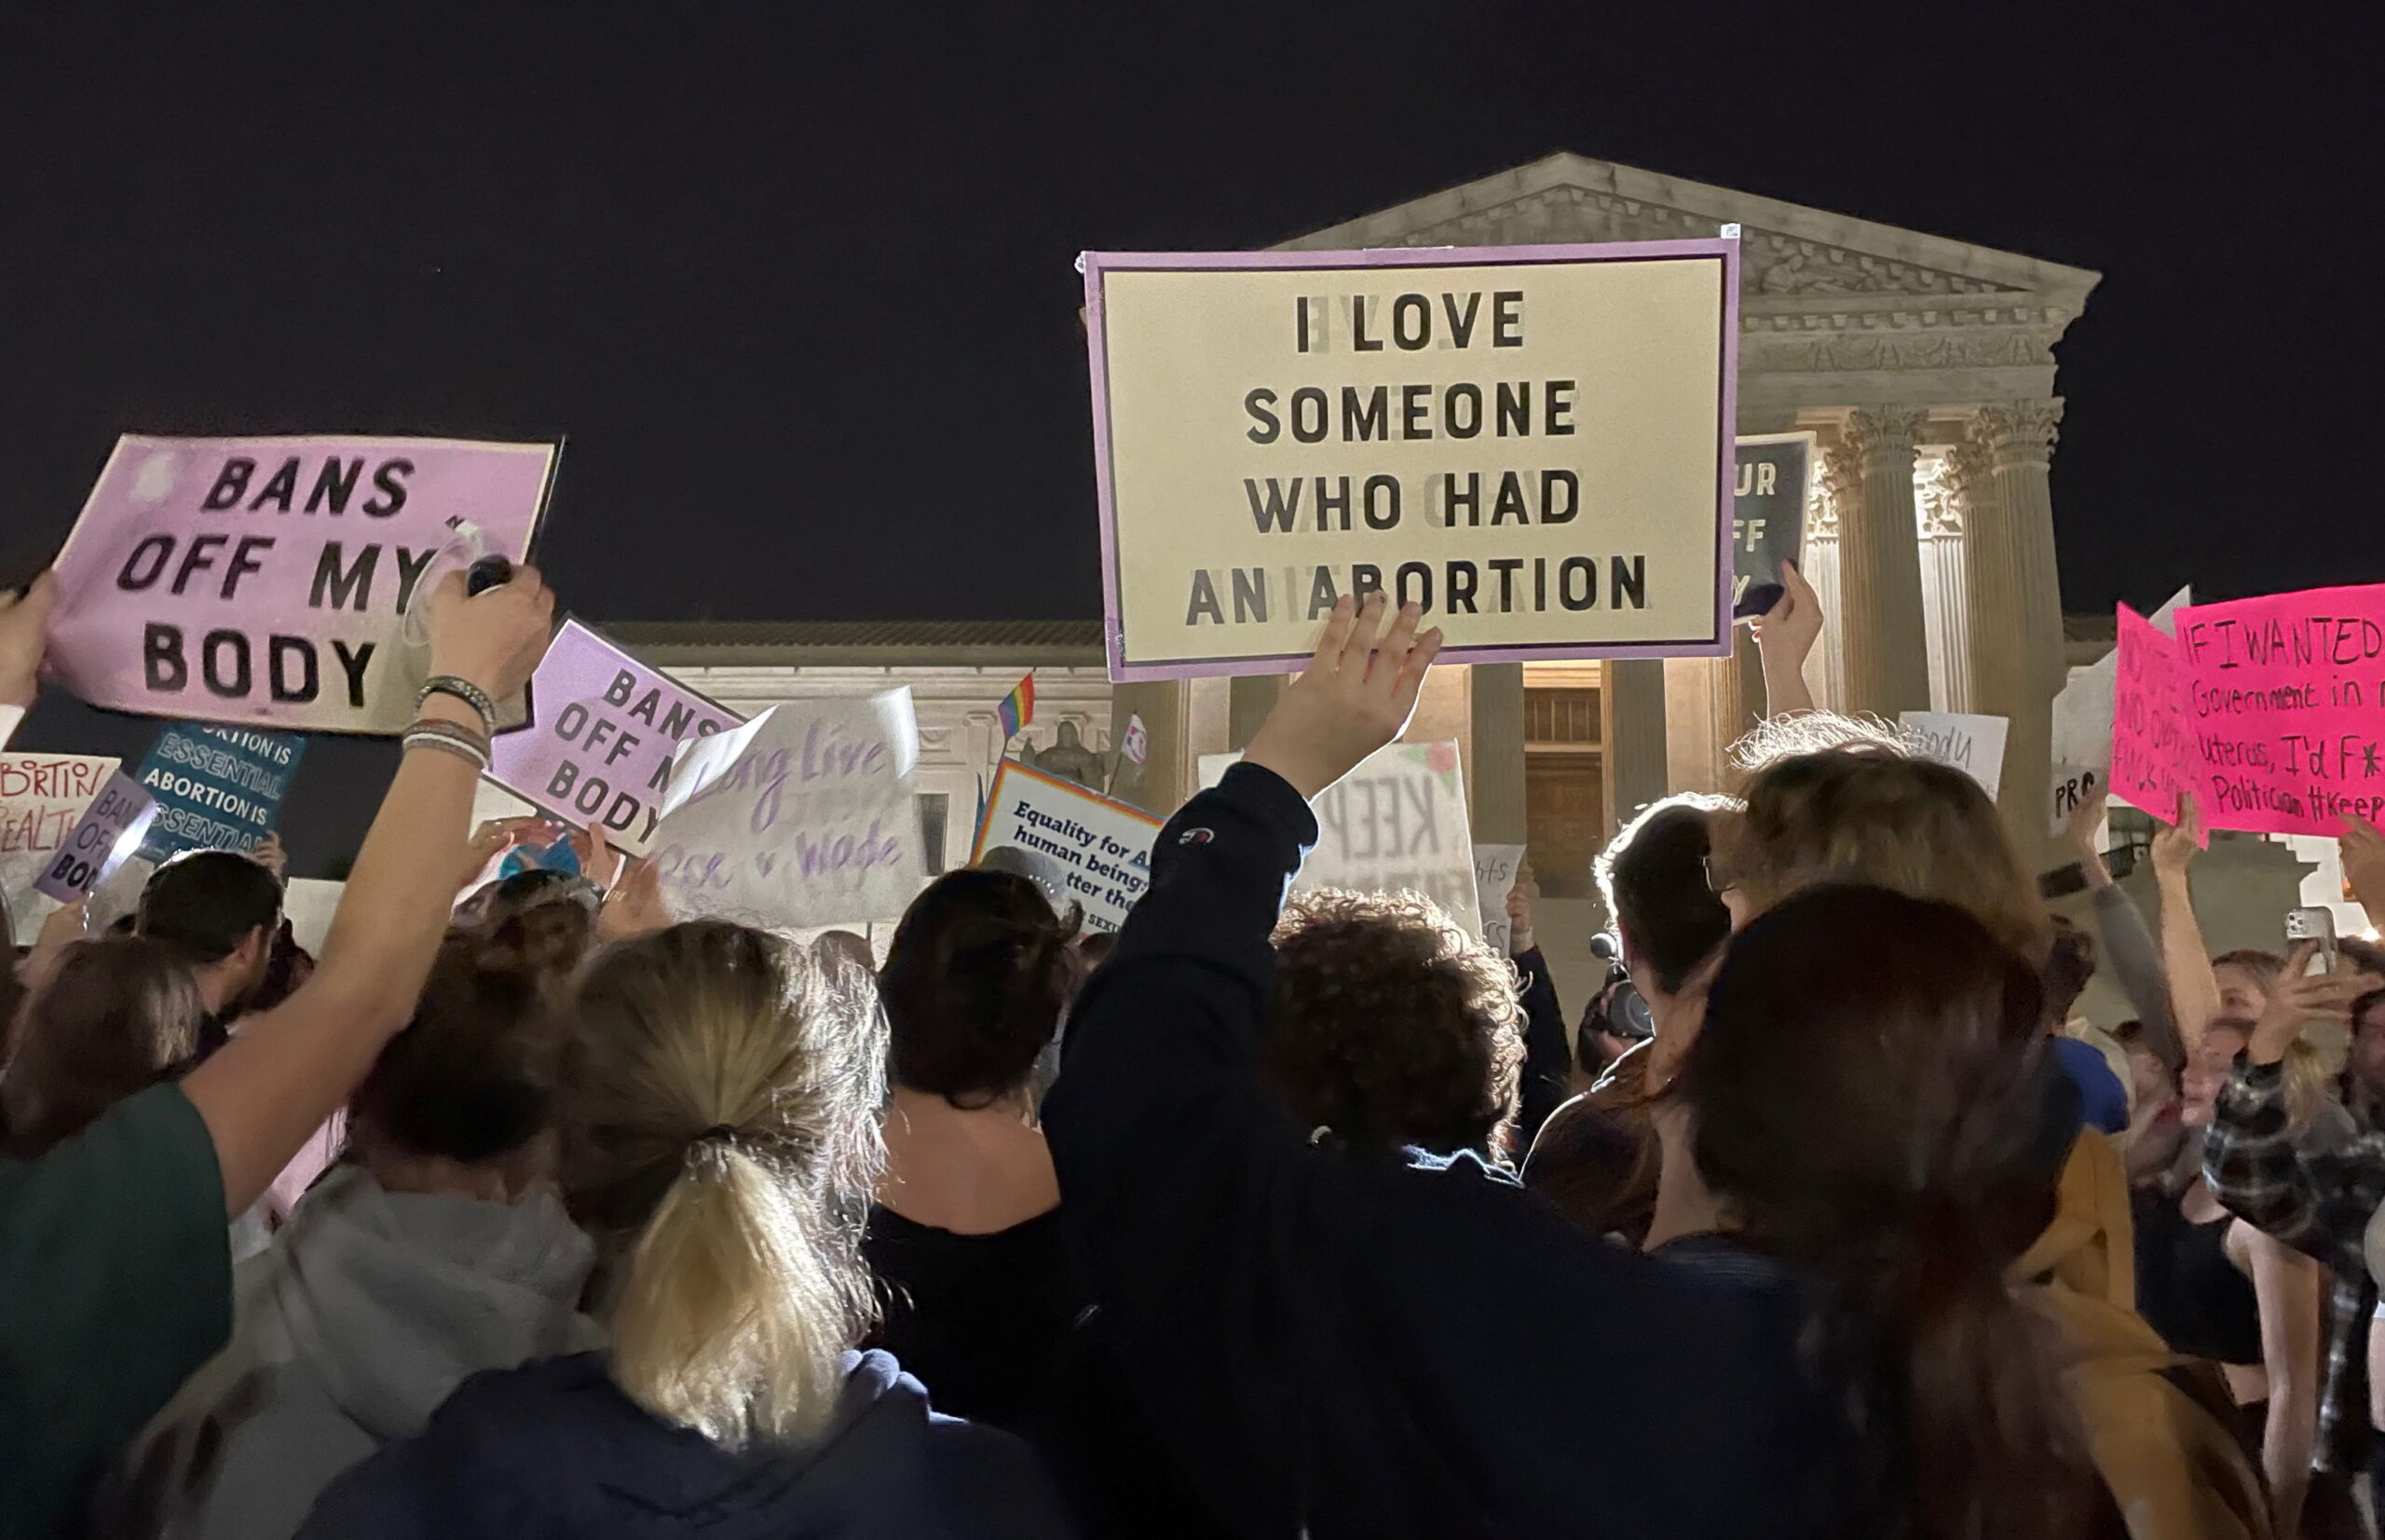 Decizia Curții Constituționale din SUA de a revoca rezoluțiile cazului Joe v Wade cu privire la dreptul avorturilor din SUA stârnește proteste la nivel național